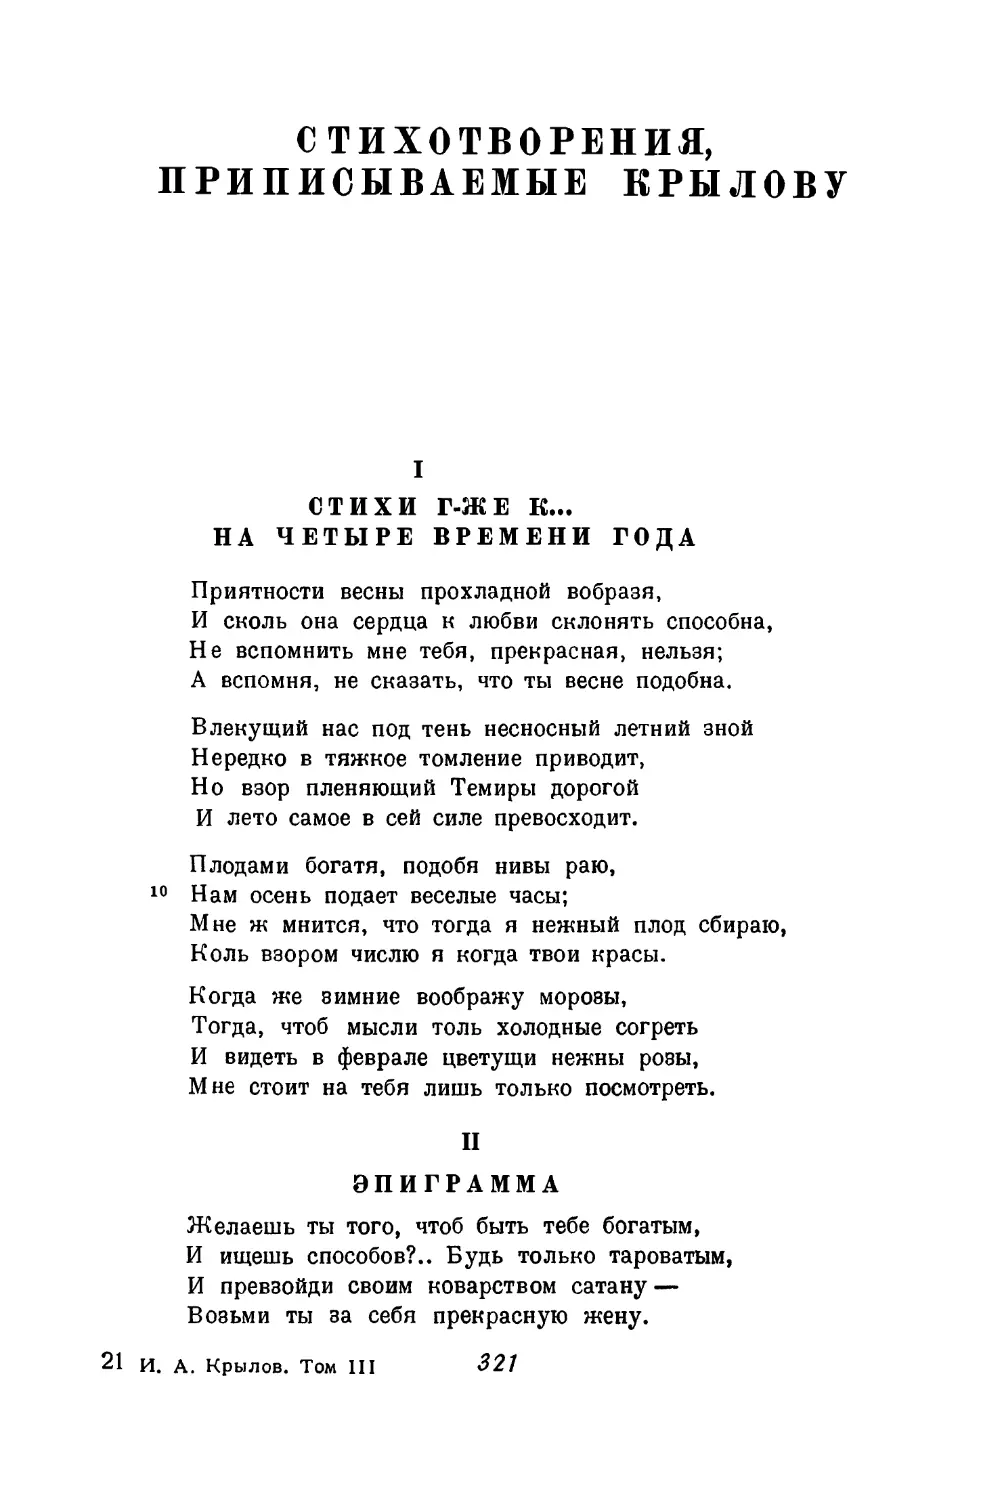 Стихотворения, приписываемые Крылову
II. Эпиграмма